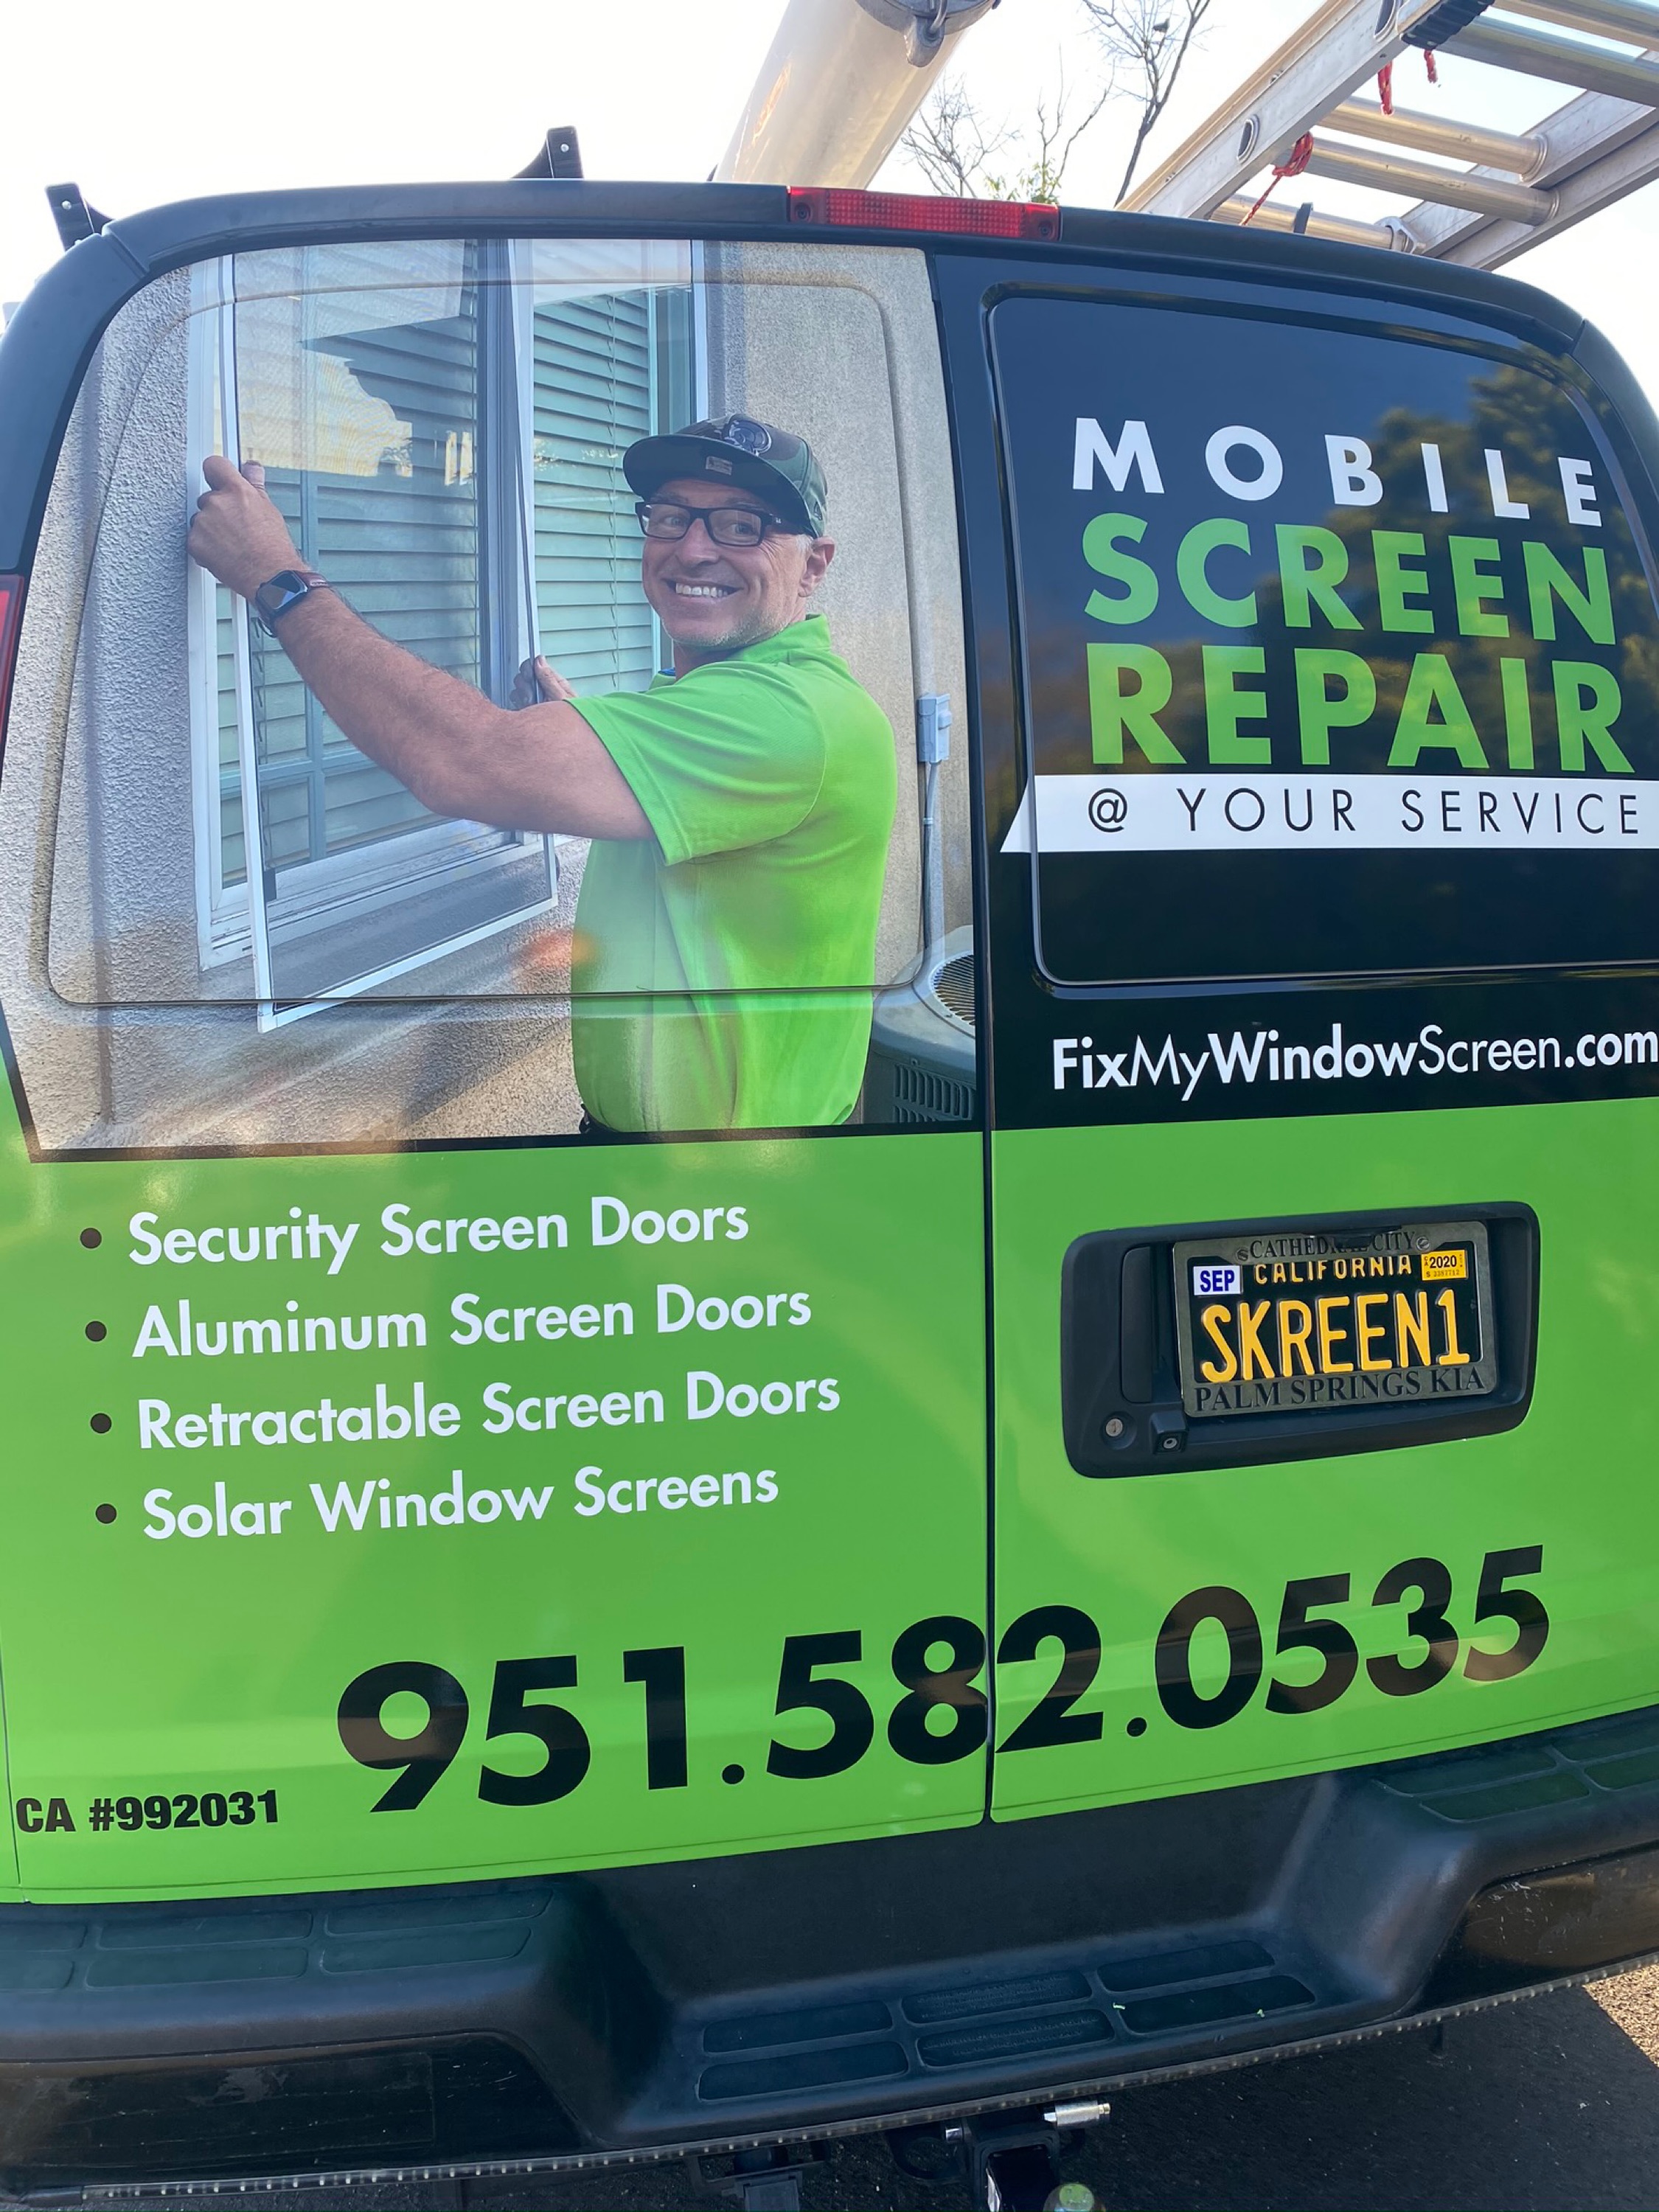 Mobile Screen Repair @ Your Service Logo